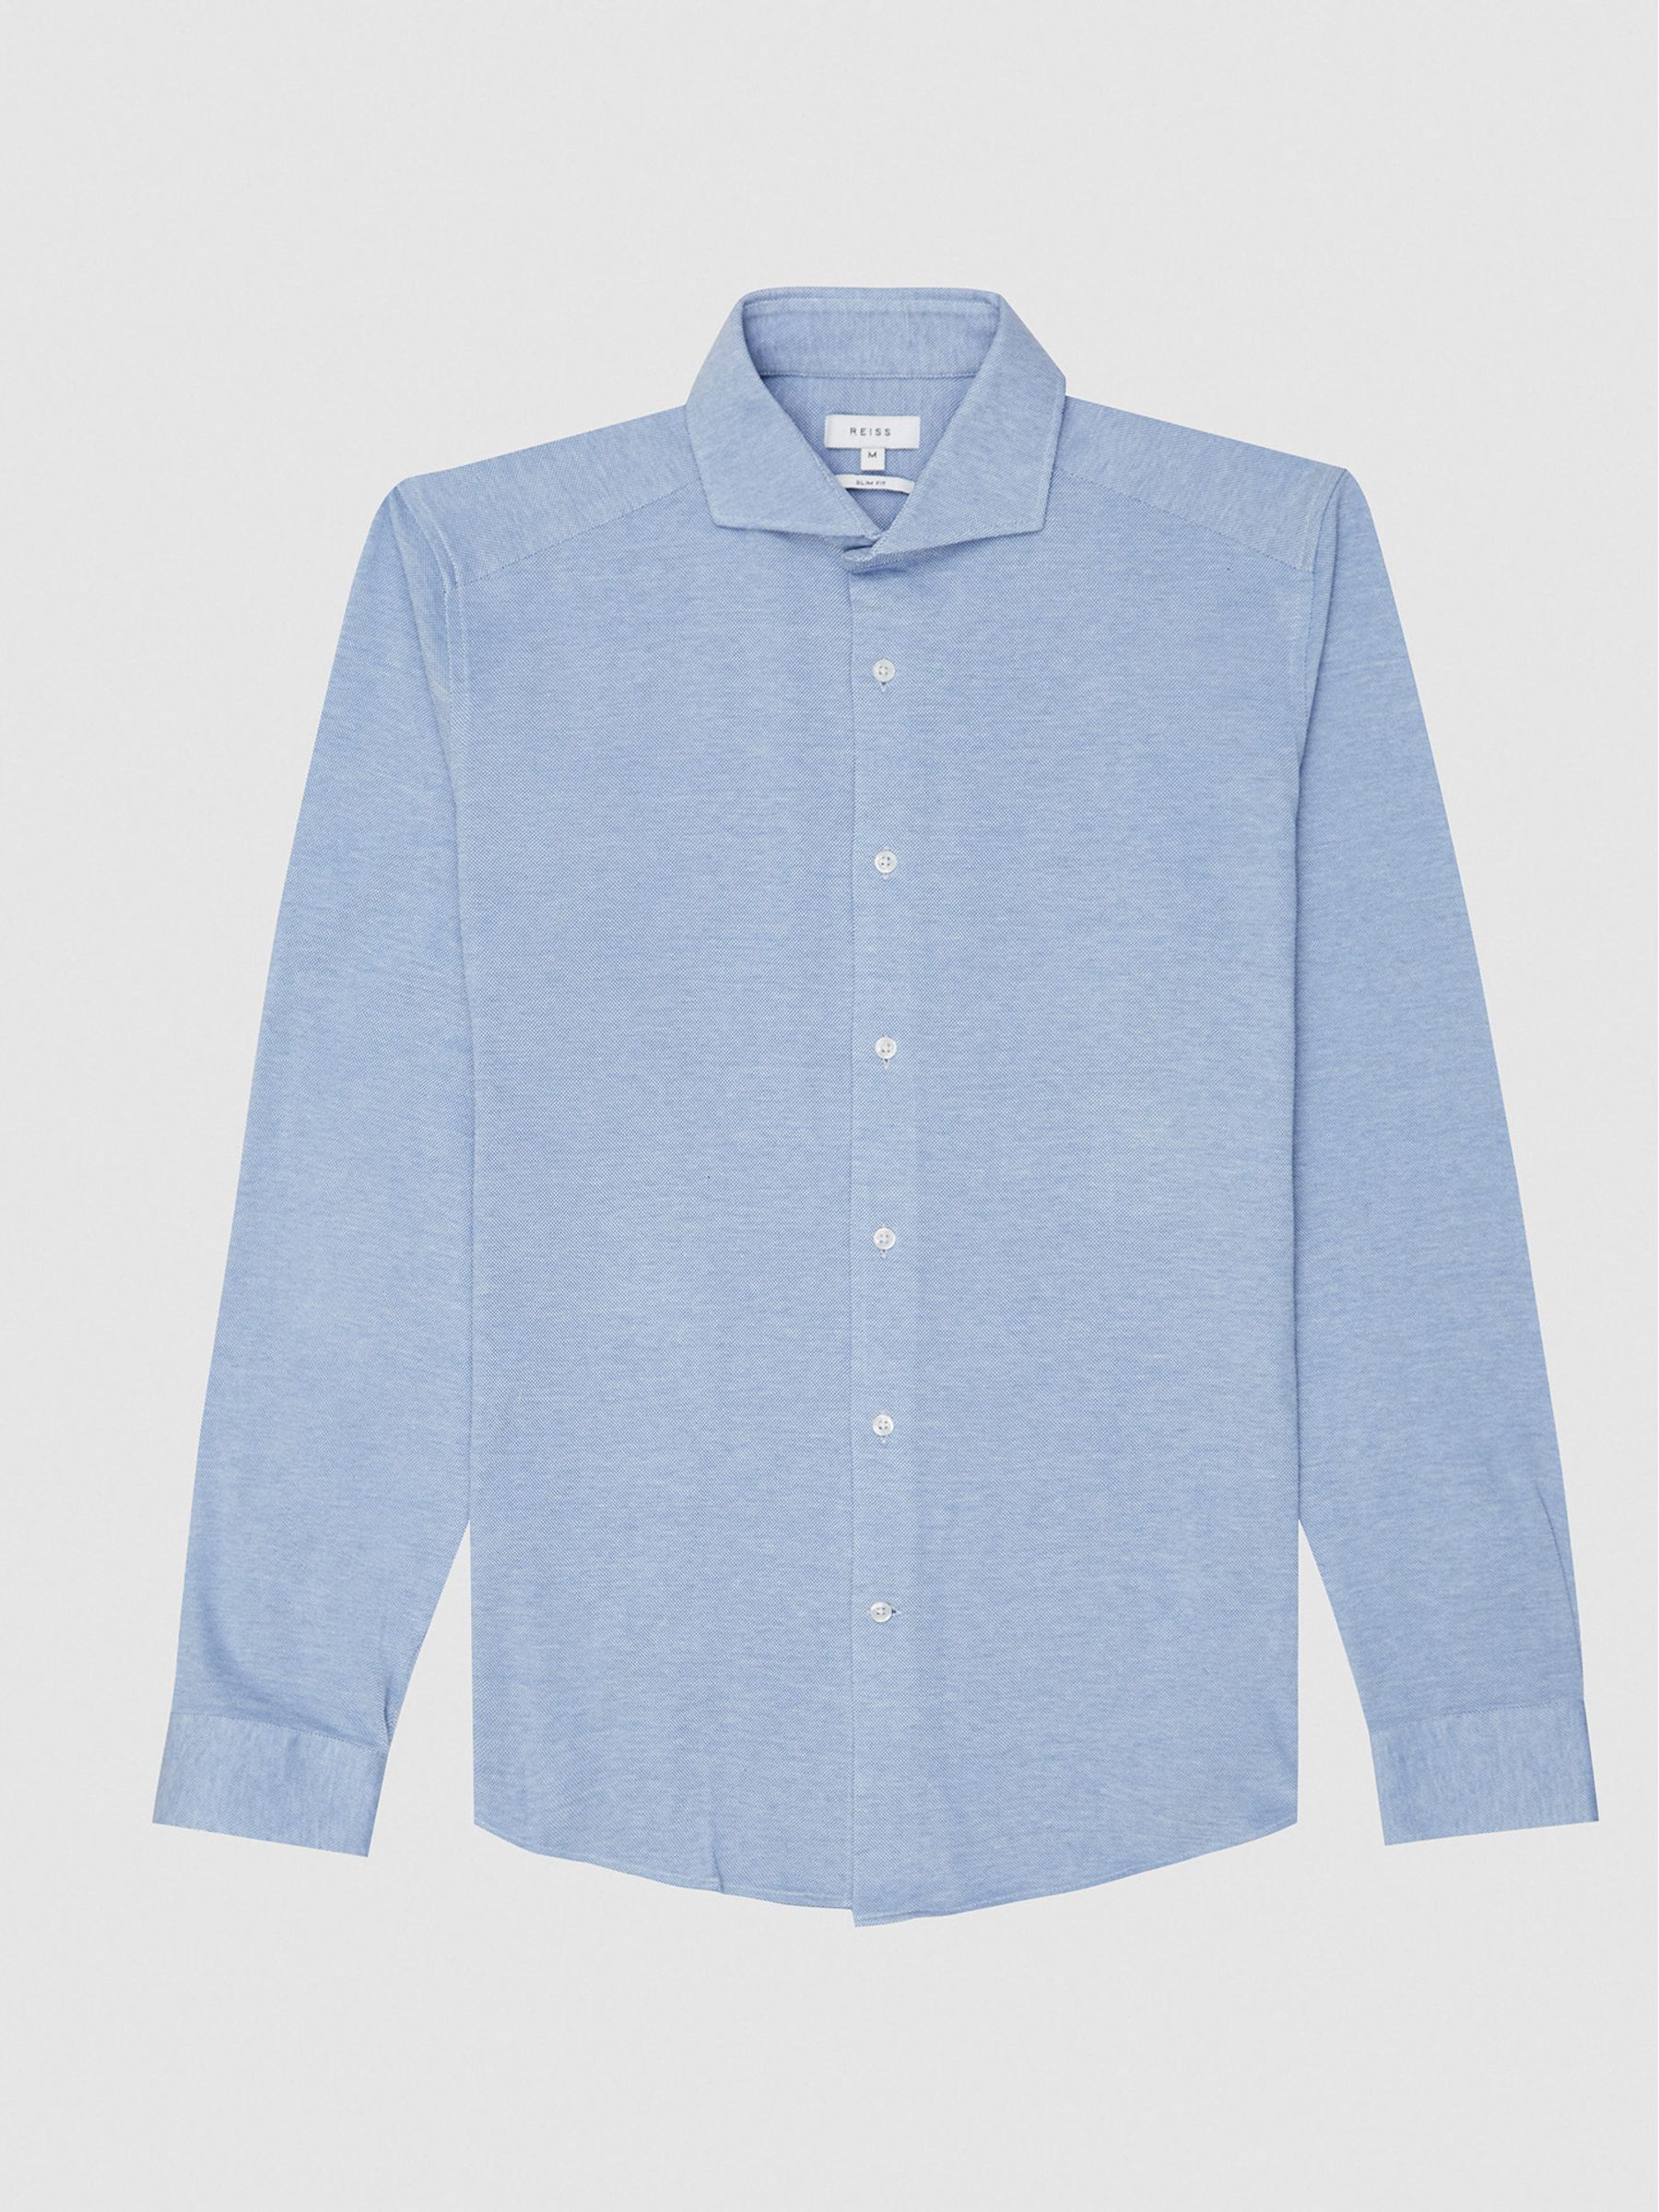 Reiss Gale Jersey Button Through Shirt - REISS